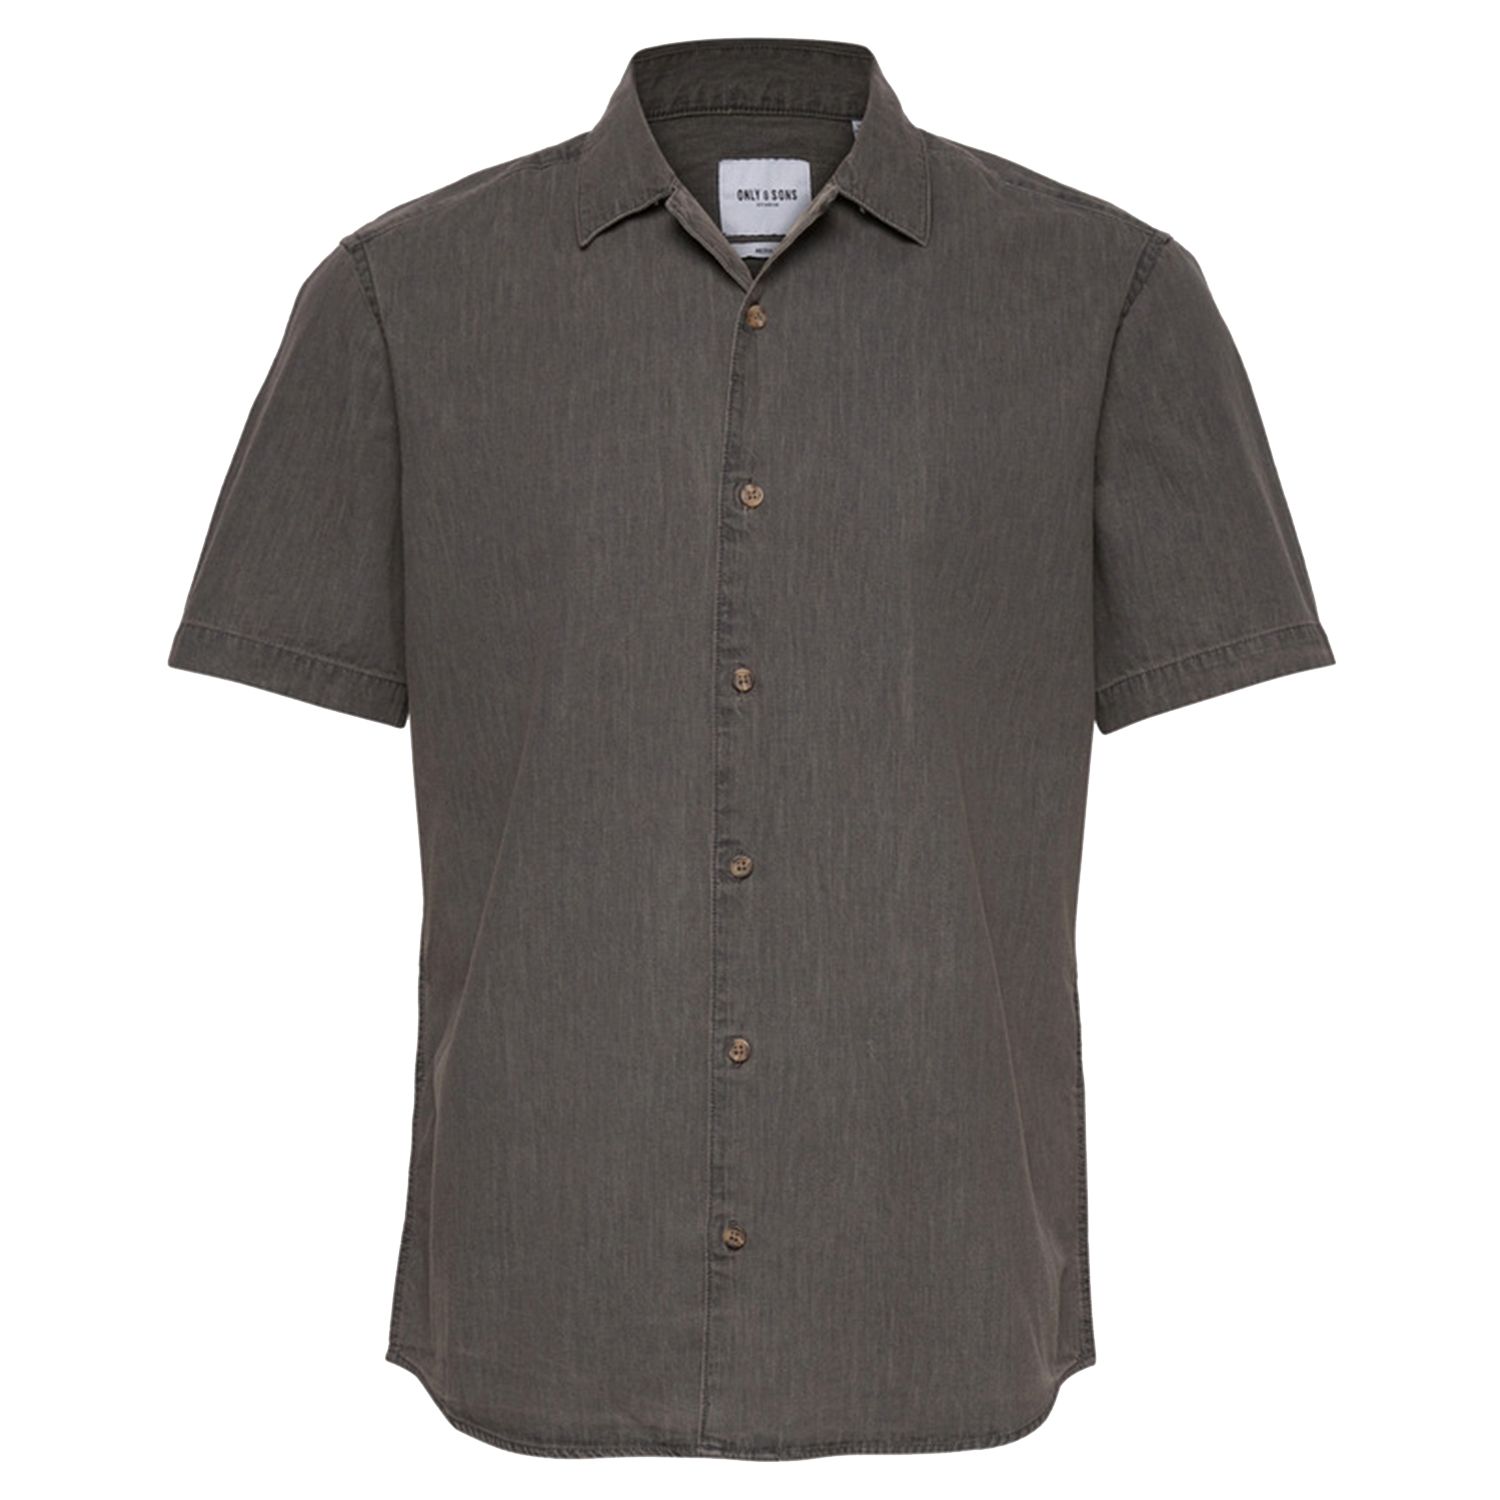 پیراهن آستین کوتاه مردانه اونلی اند سانز مدل جین کد AUGUST-22016591 رنگ خاکستری -  - 1